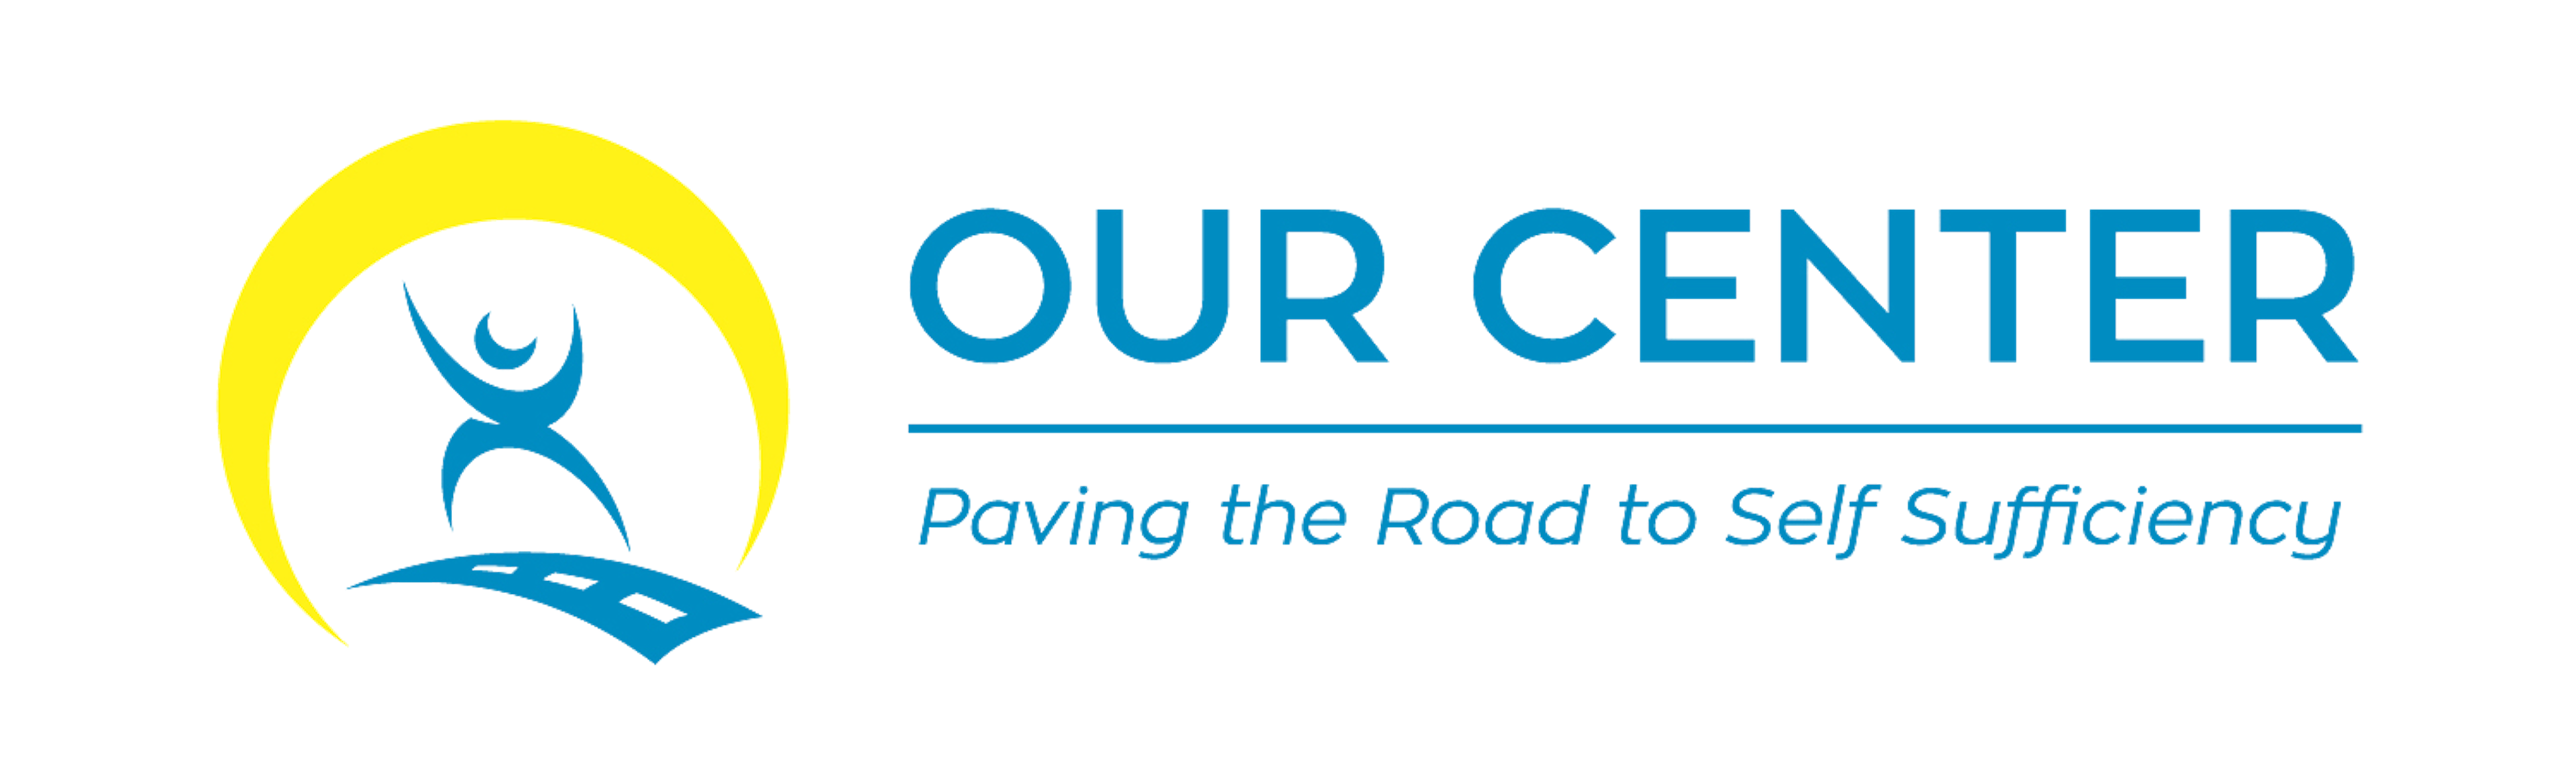 Our Center logo